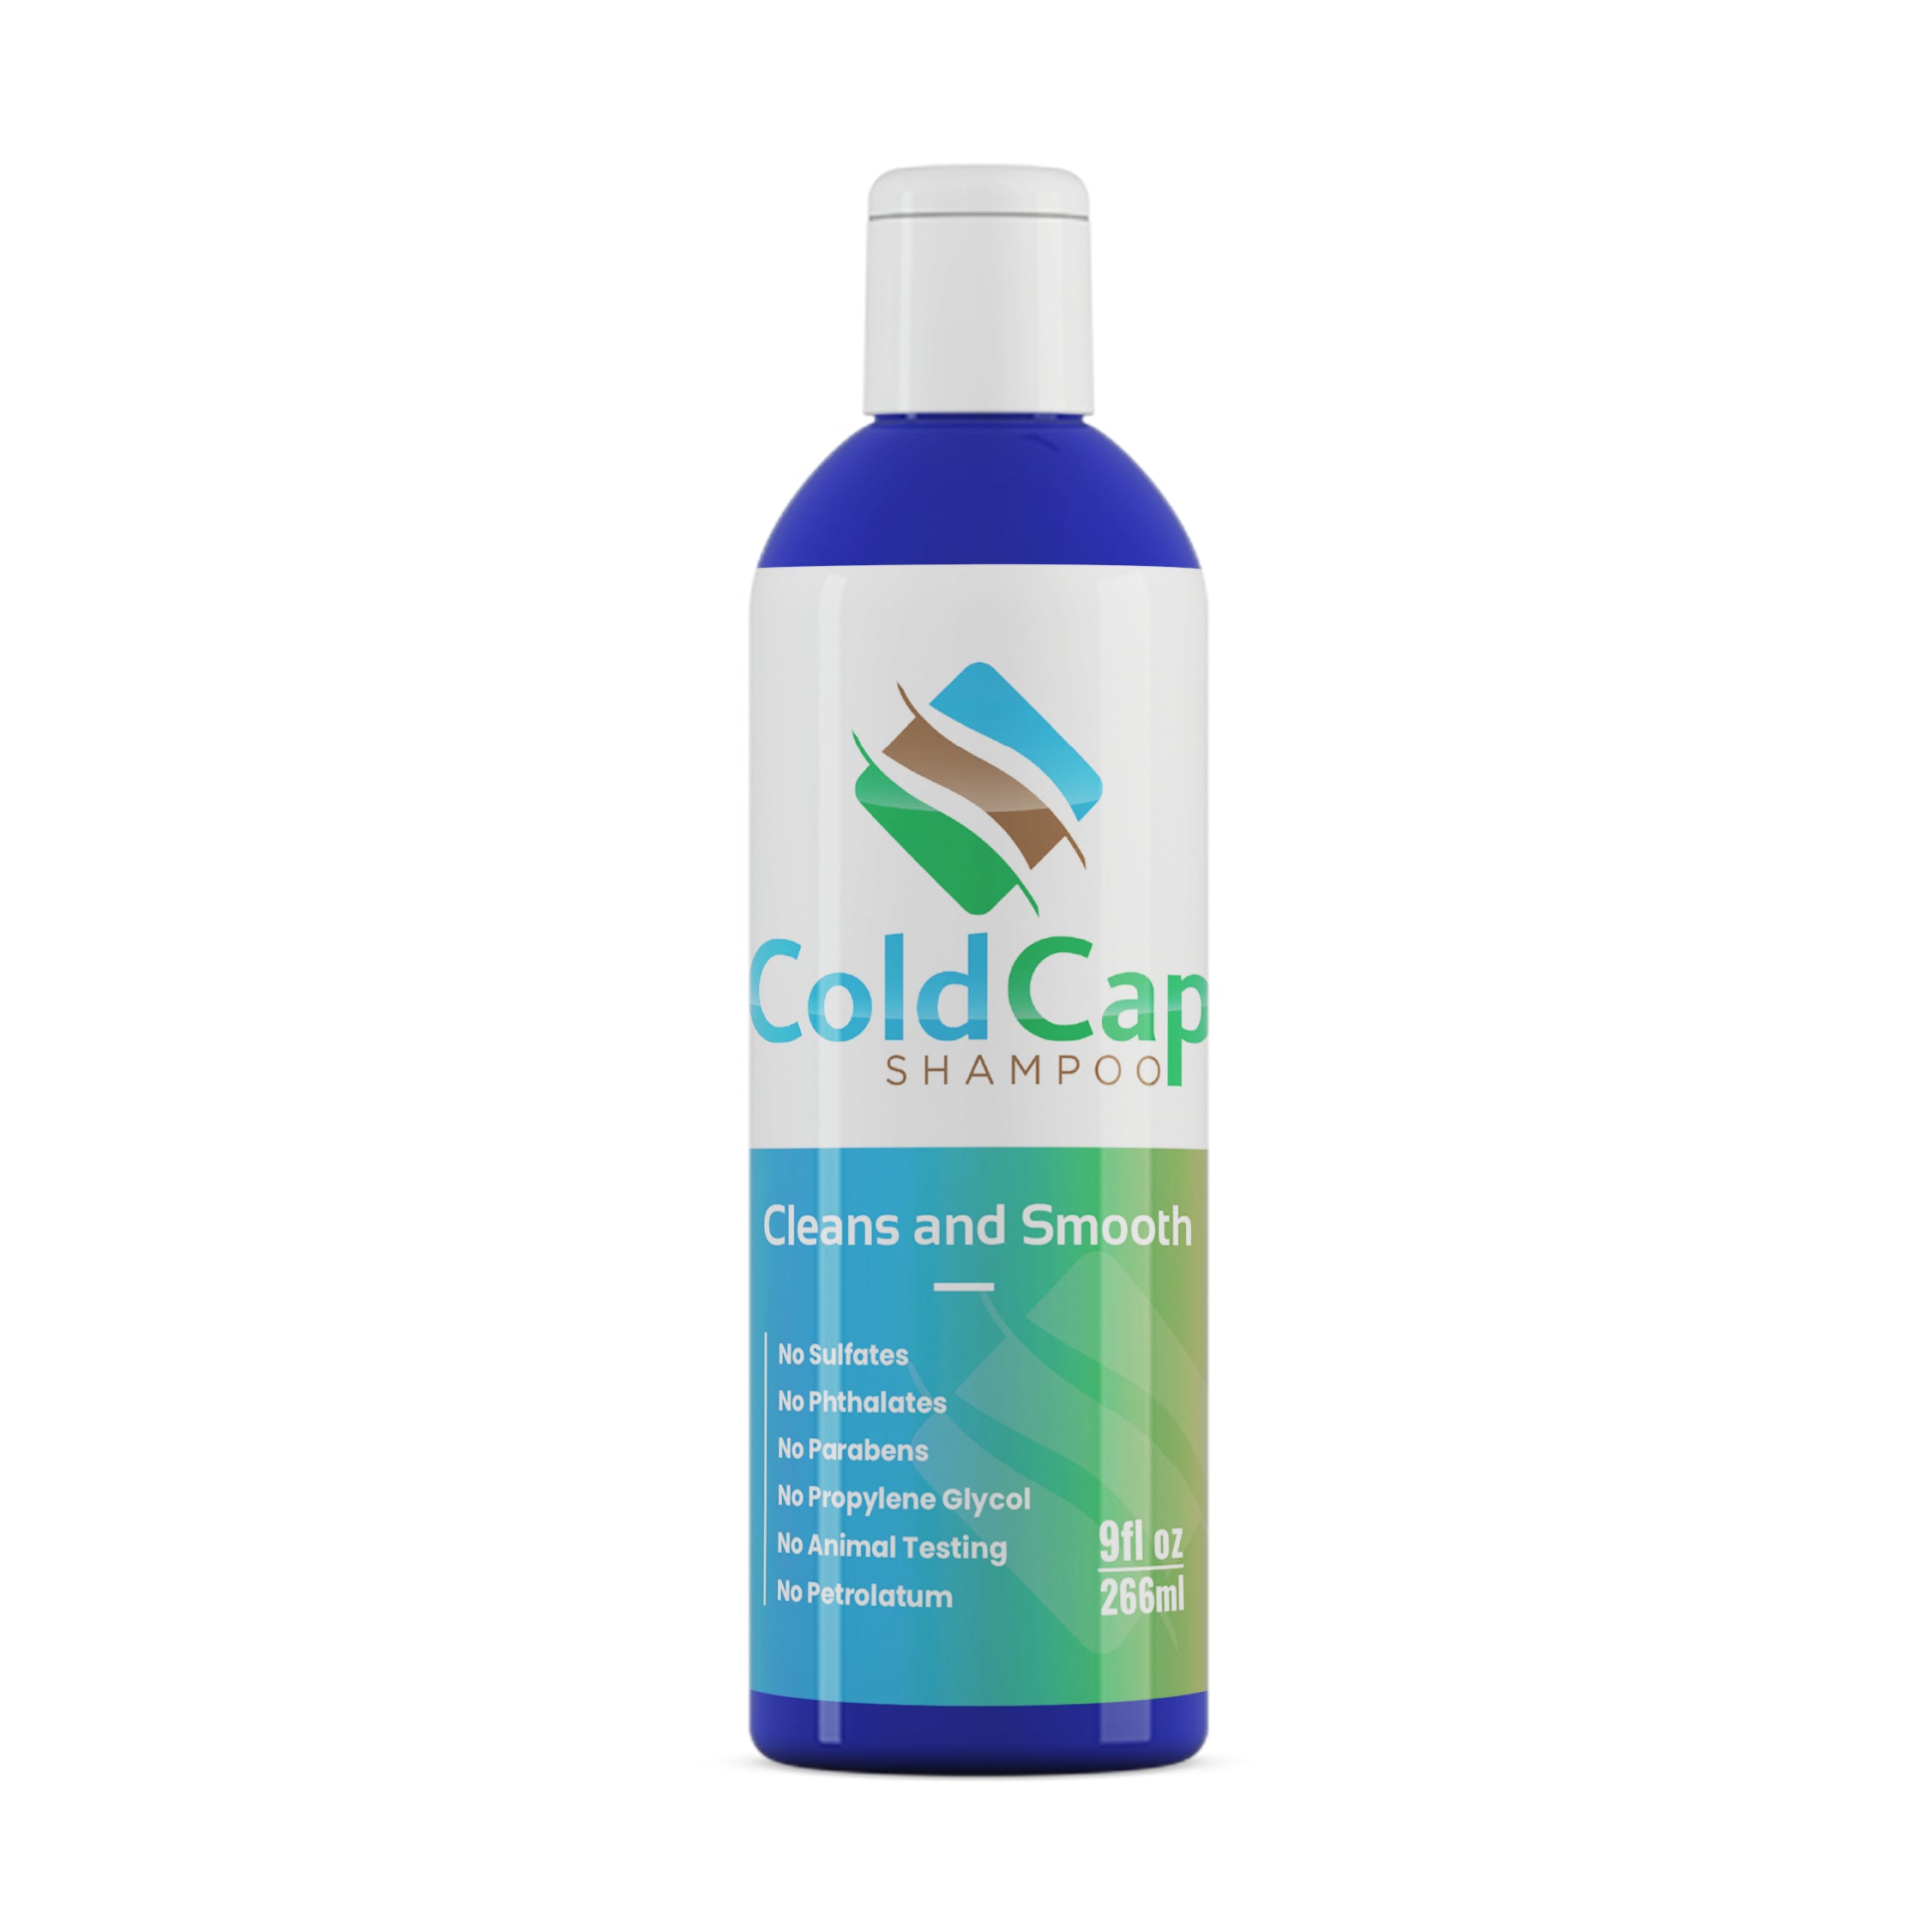 Cold Cap Hair Shampoo